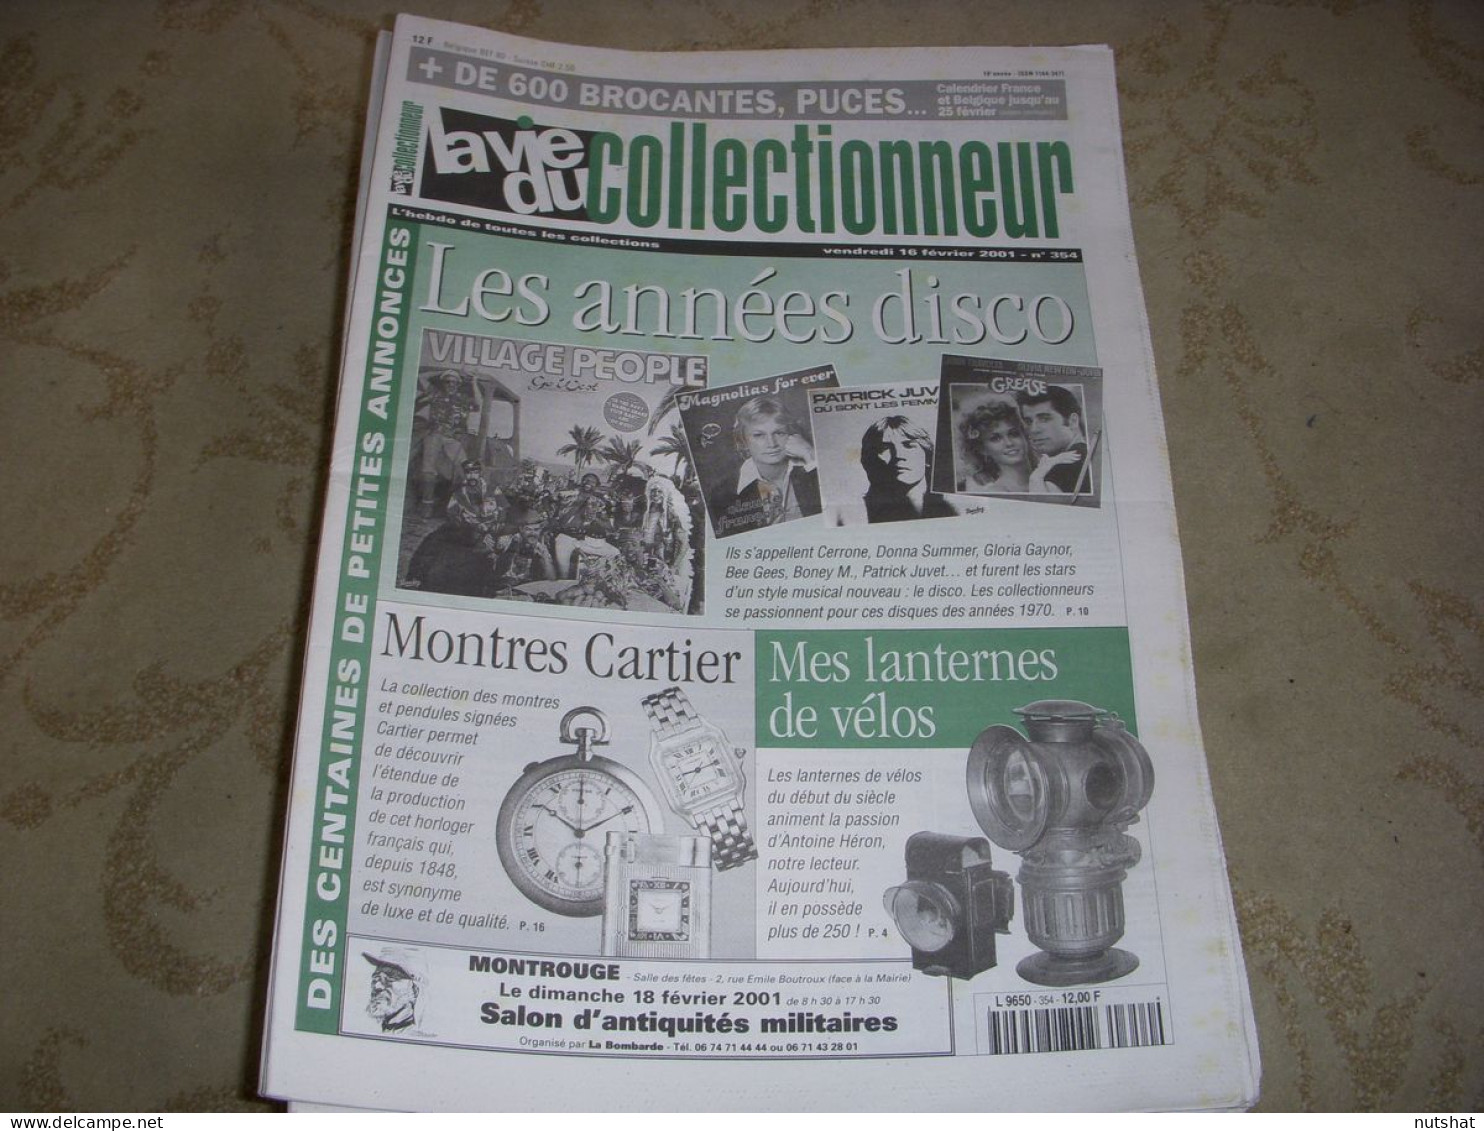 LVC VIE Du COLLECTIONNEUR 354 16.02.2001 ANNEES DISCO LANTERNES VELO MONTRES  - Brocantes & Collections